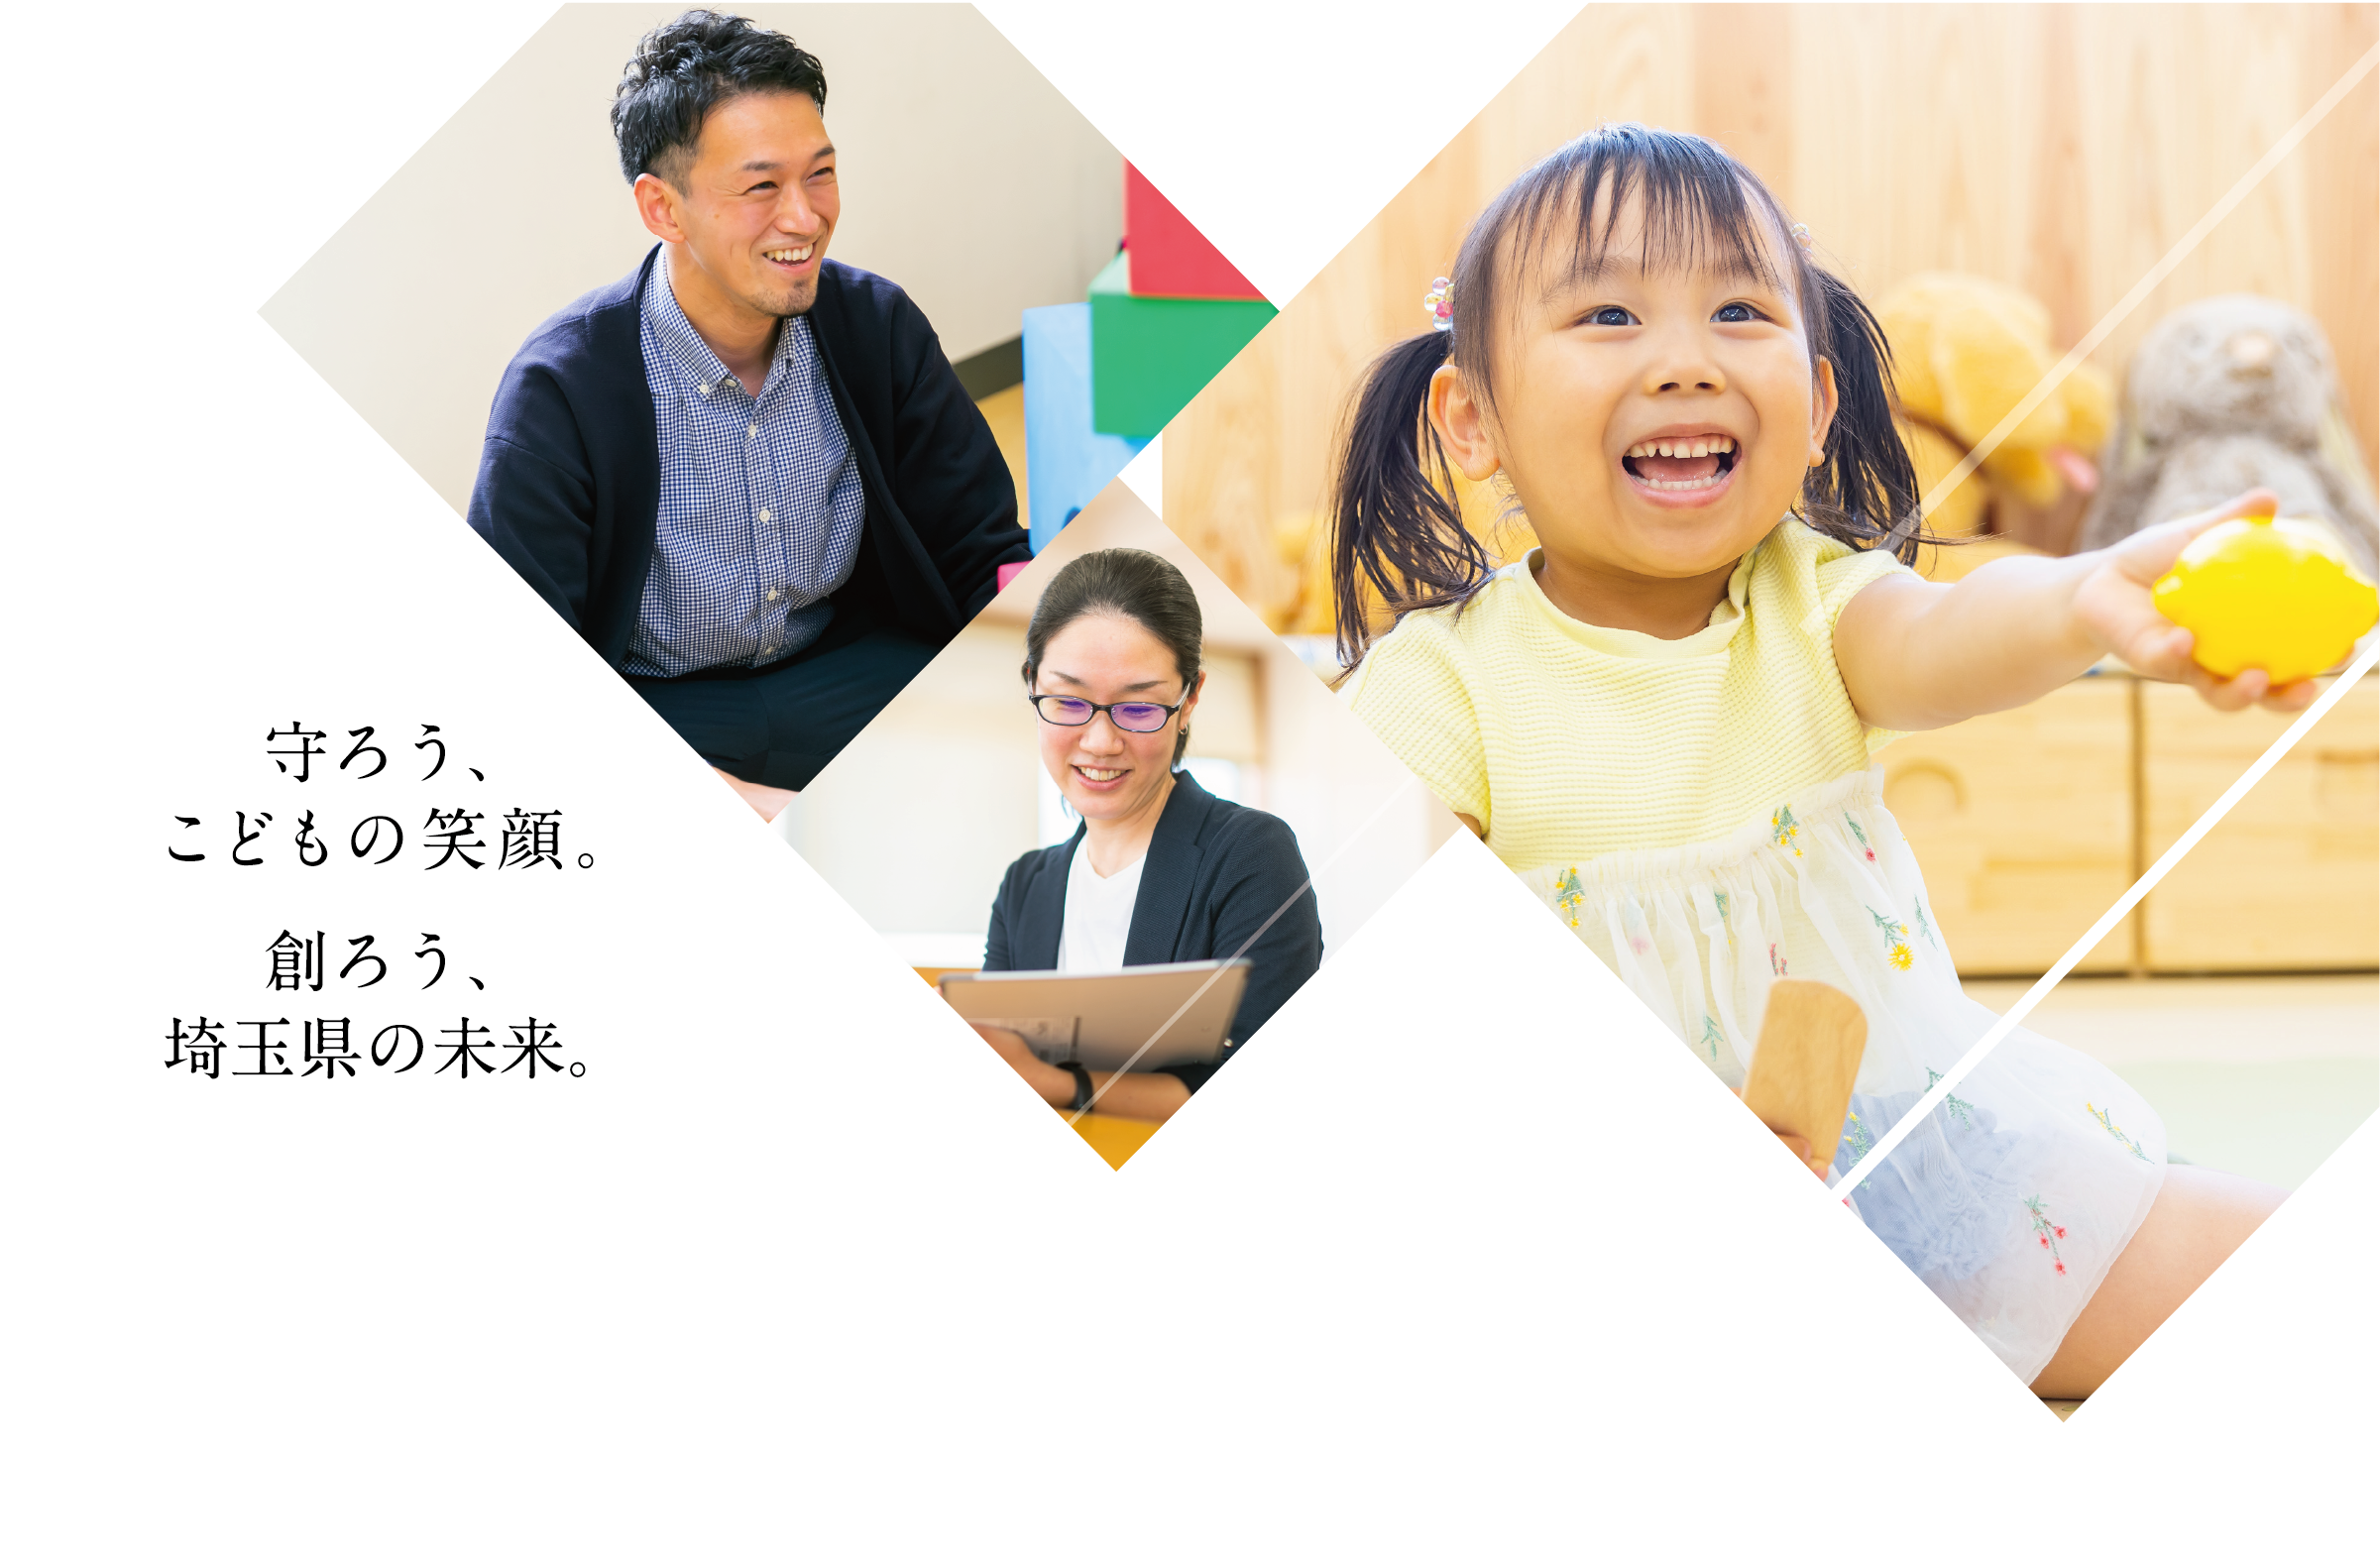 守ろう、子供達の笑顔。創ろう、埼玉県の未来。